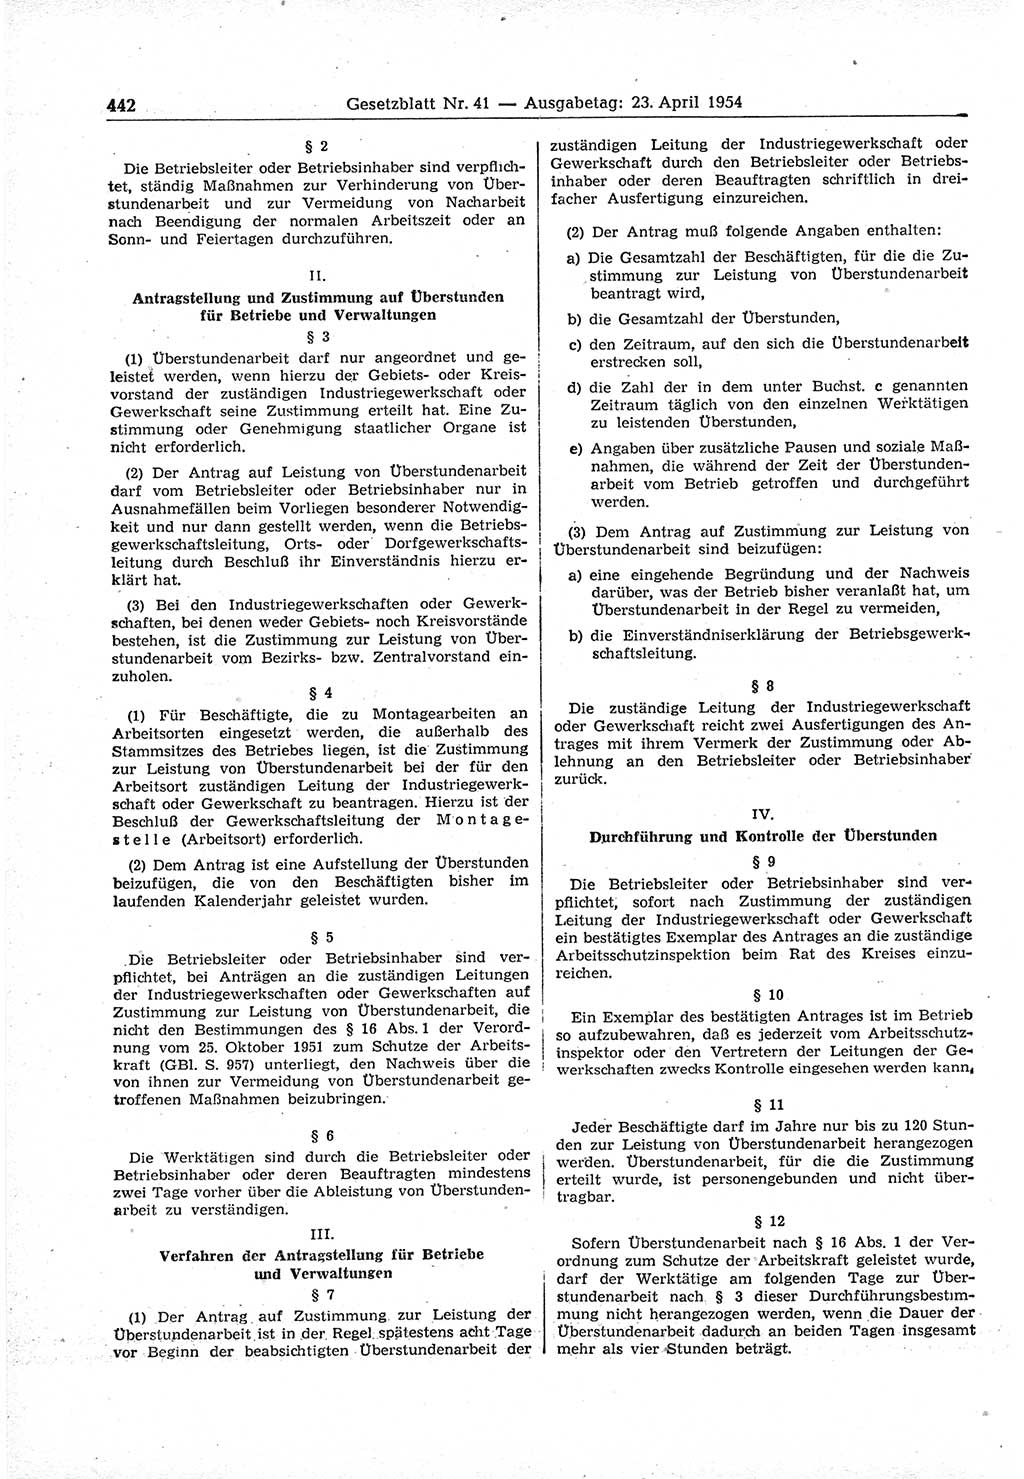 Gesetzblatt (GBl.) der Deutschen Demokratischen Republik (DDR) 1954, Seite 442 (GBl. DDR 1954, S. 442)